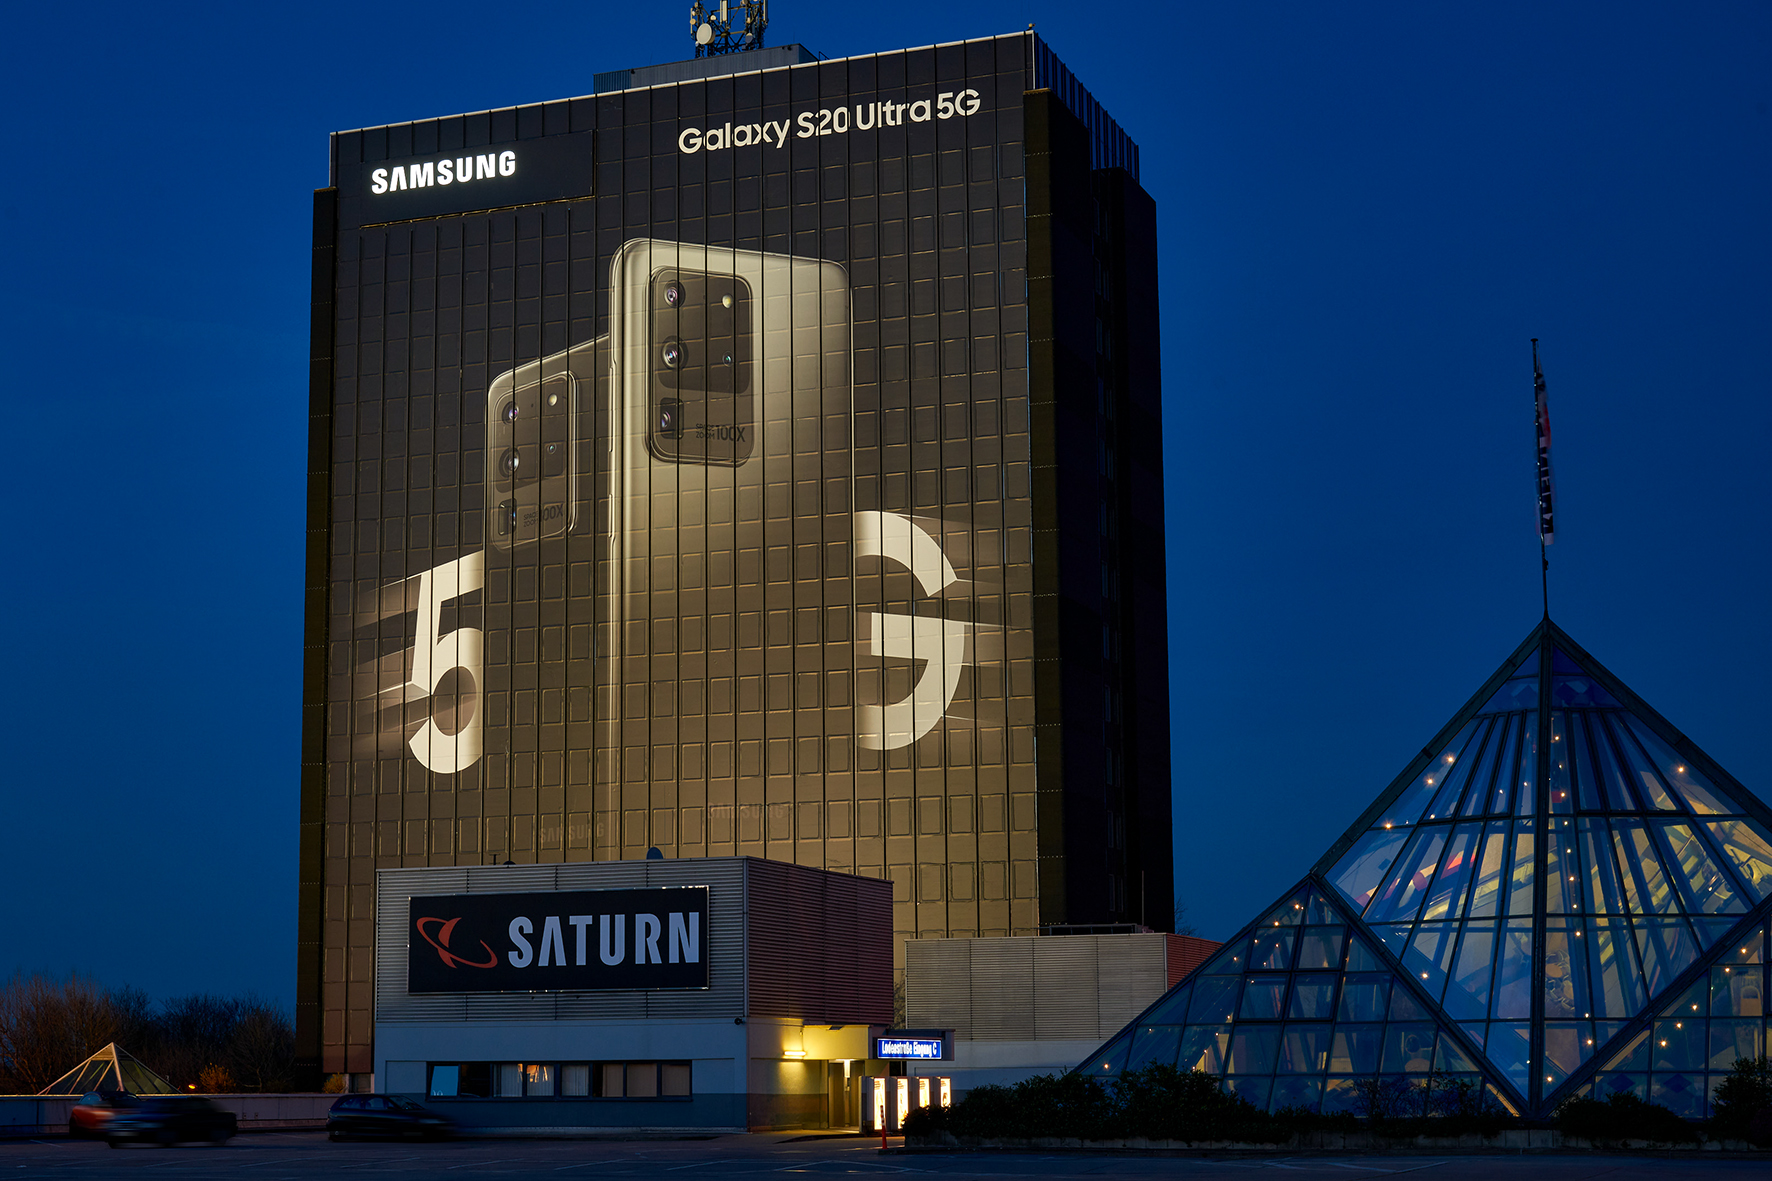 Samsung_Mühlheim an der Ruhr_A40 - Rhein Ruhr Tower - Fläche 2 Richtung Essen_001.jpg